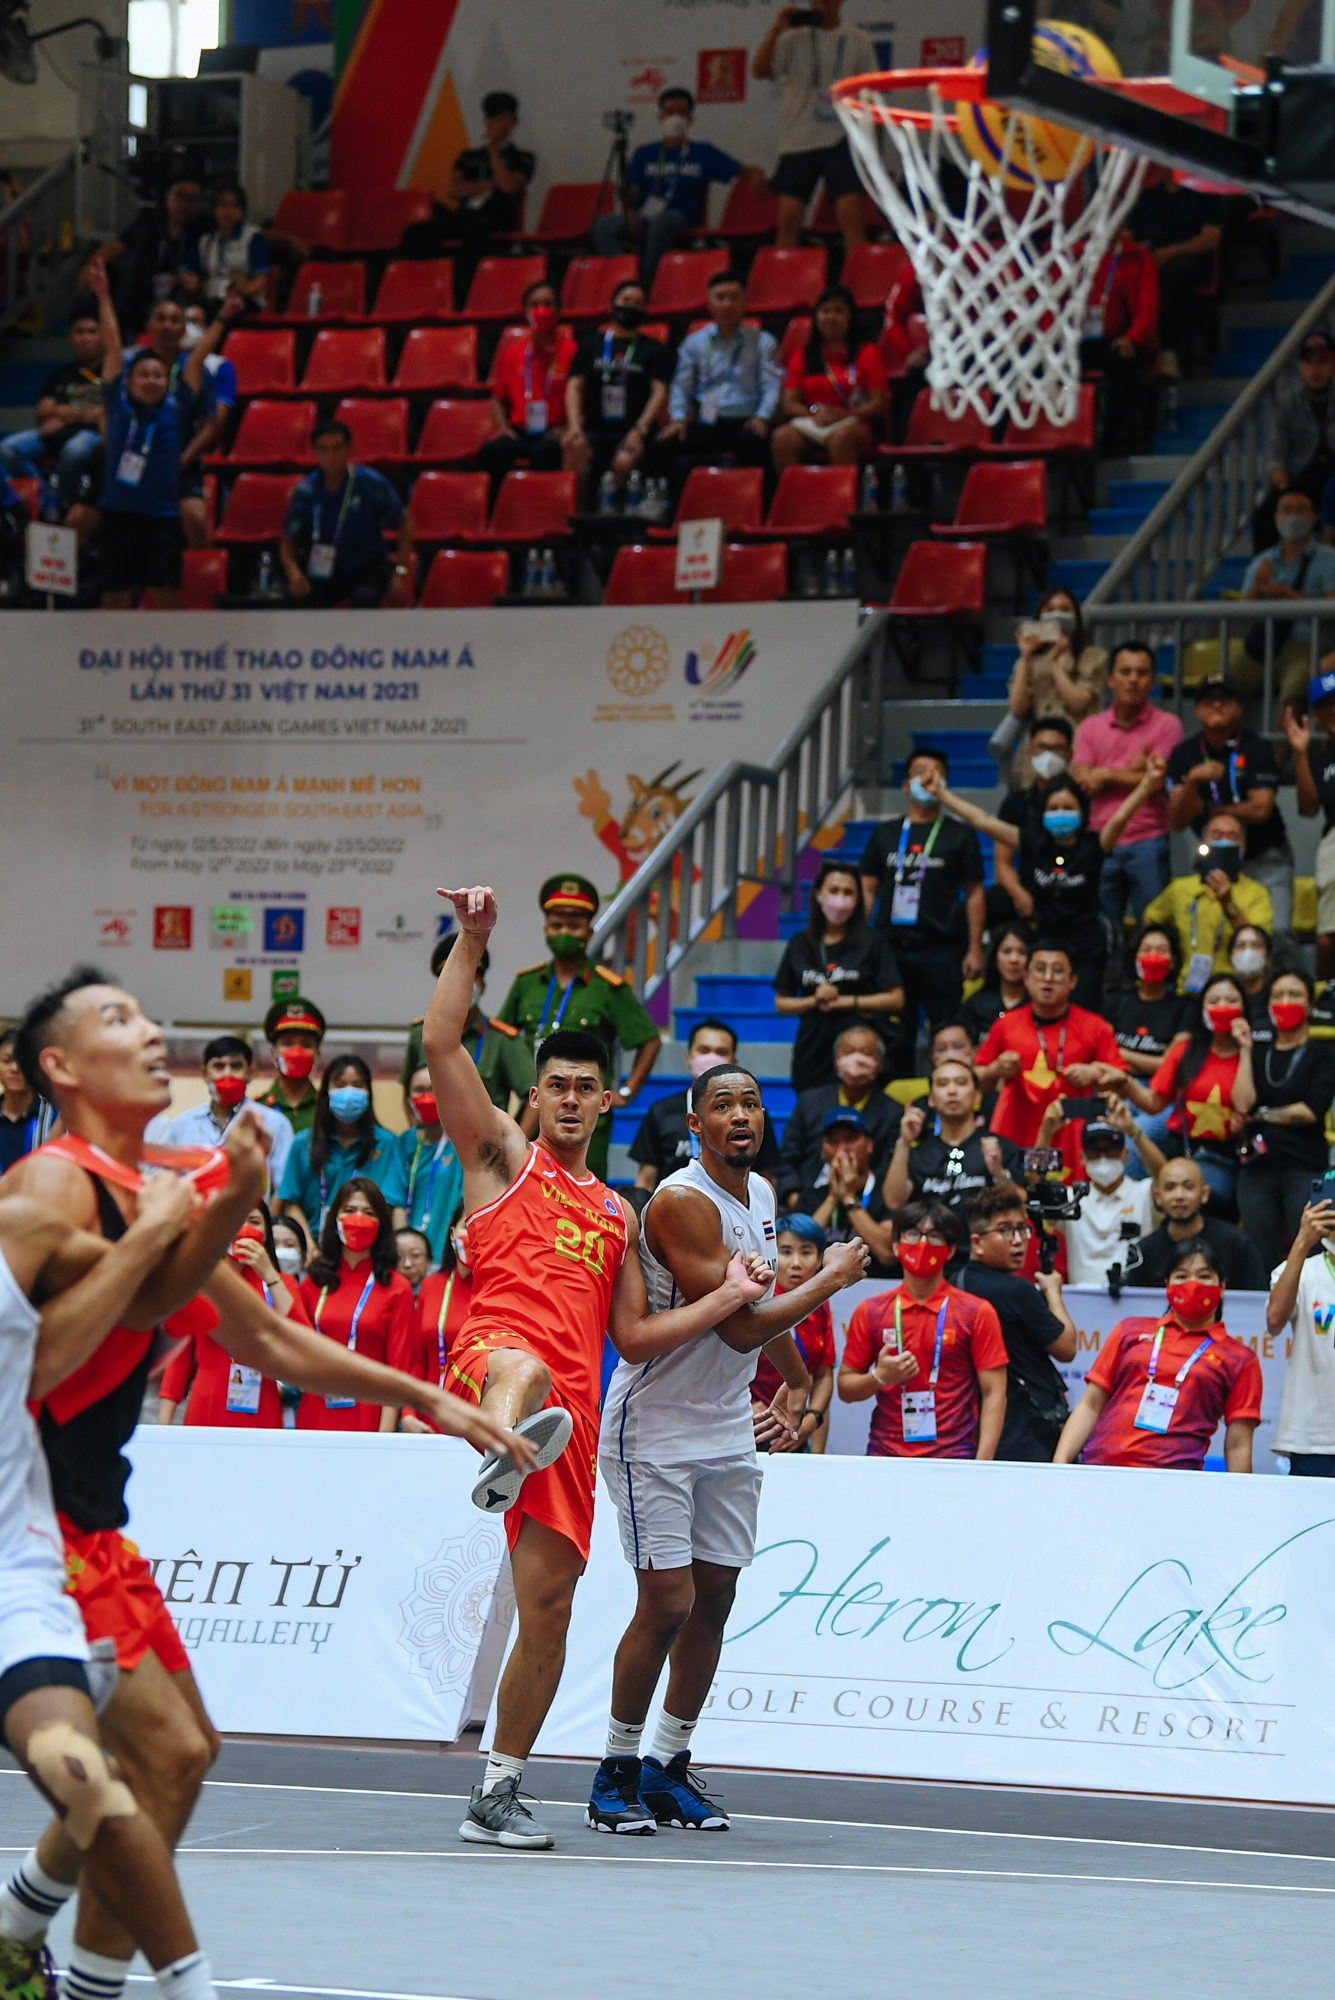 Tổng hợp 10 pha bóng game-winning 3x3 của Đội tuyển bóng rổ Việt Nam tại SEA Games 31 (1 video) - Ảnh 3.